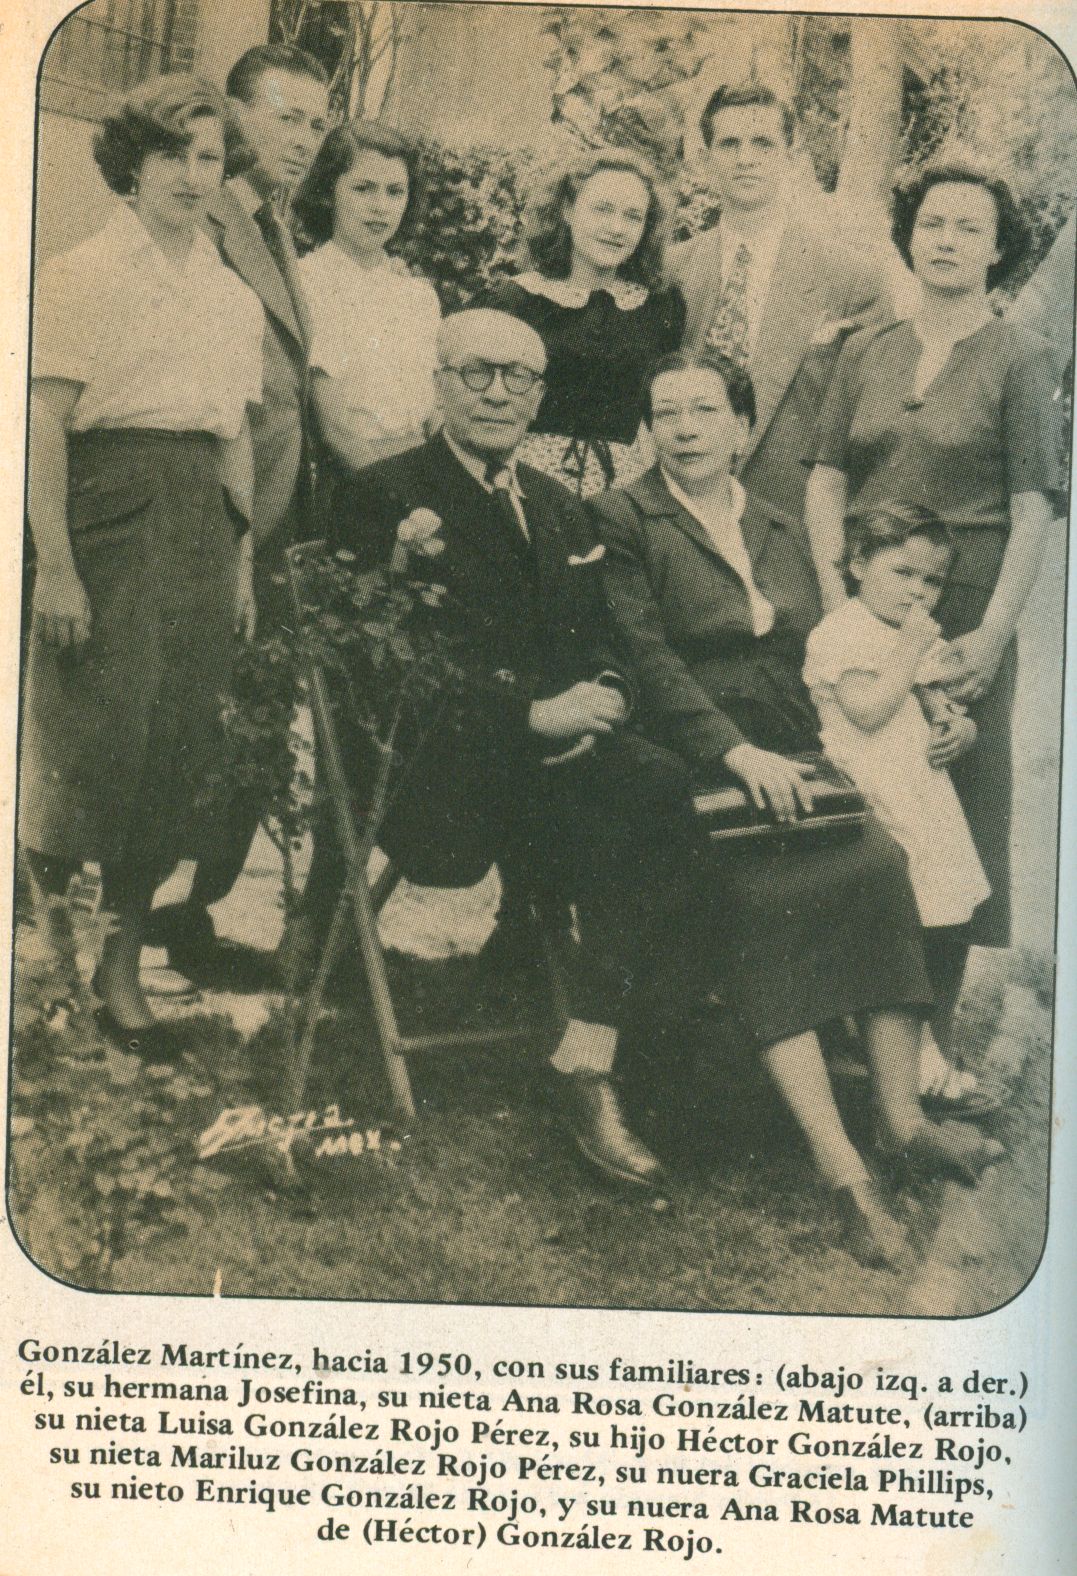 Enrique Gonzalez Martinez, su hermana Josefina y otros familiares.